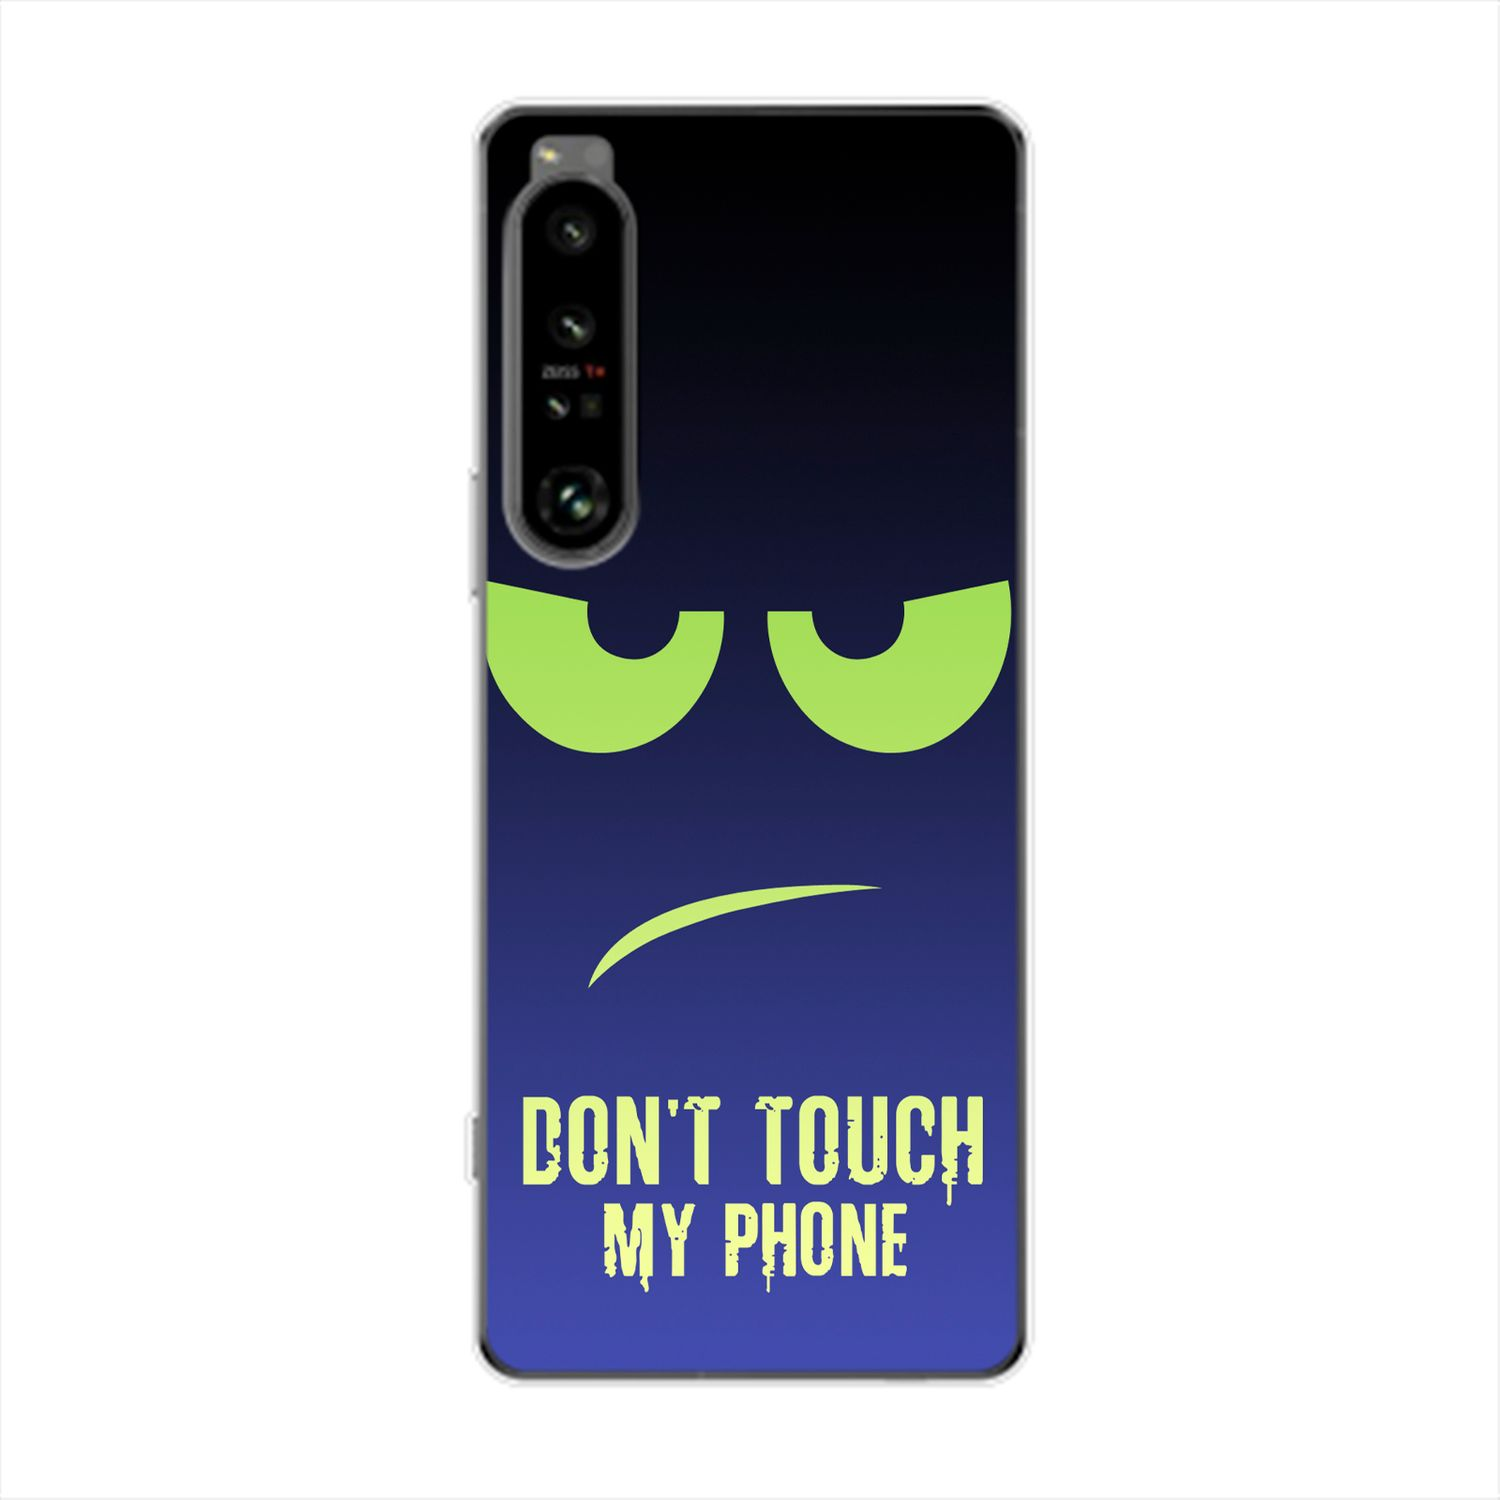 KÖNIG DESIGN Case, Grün Blau Touch Phone My Xperia Dont Backcover, 1 Sony, IV